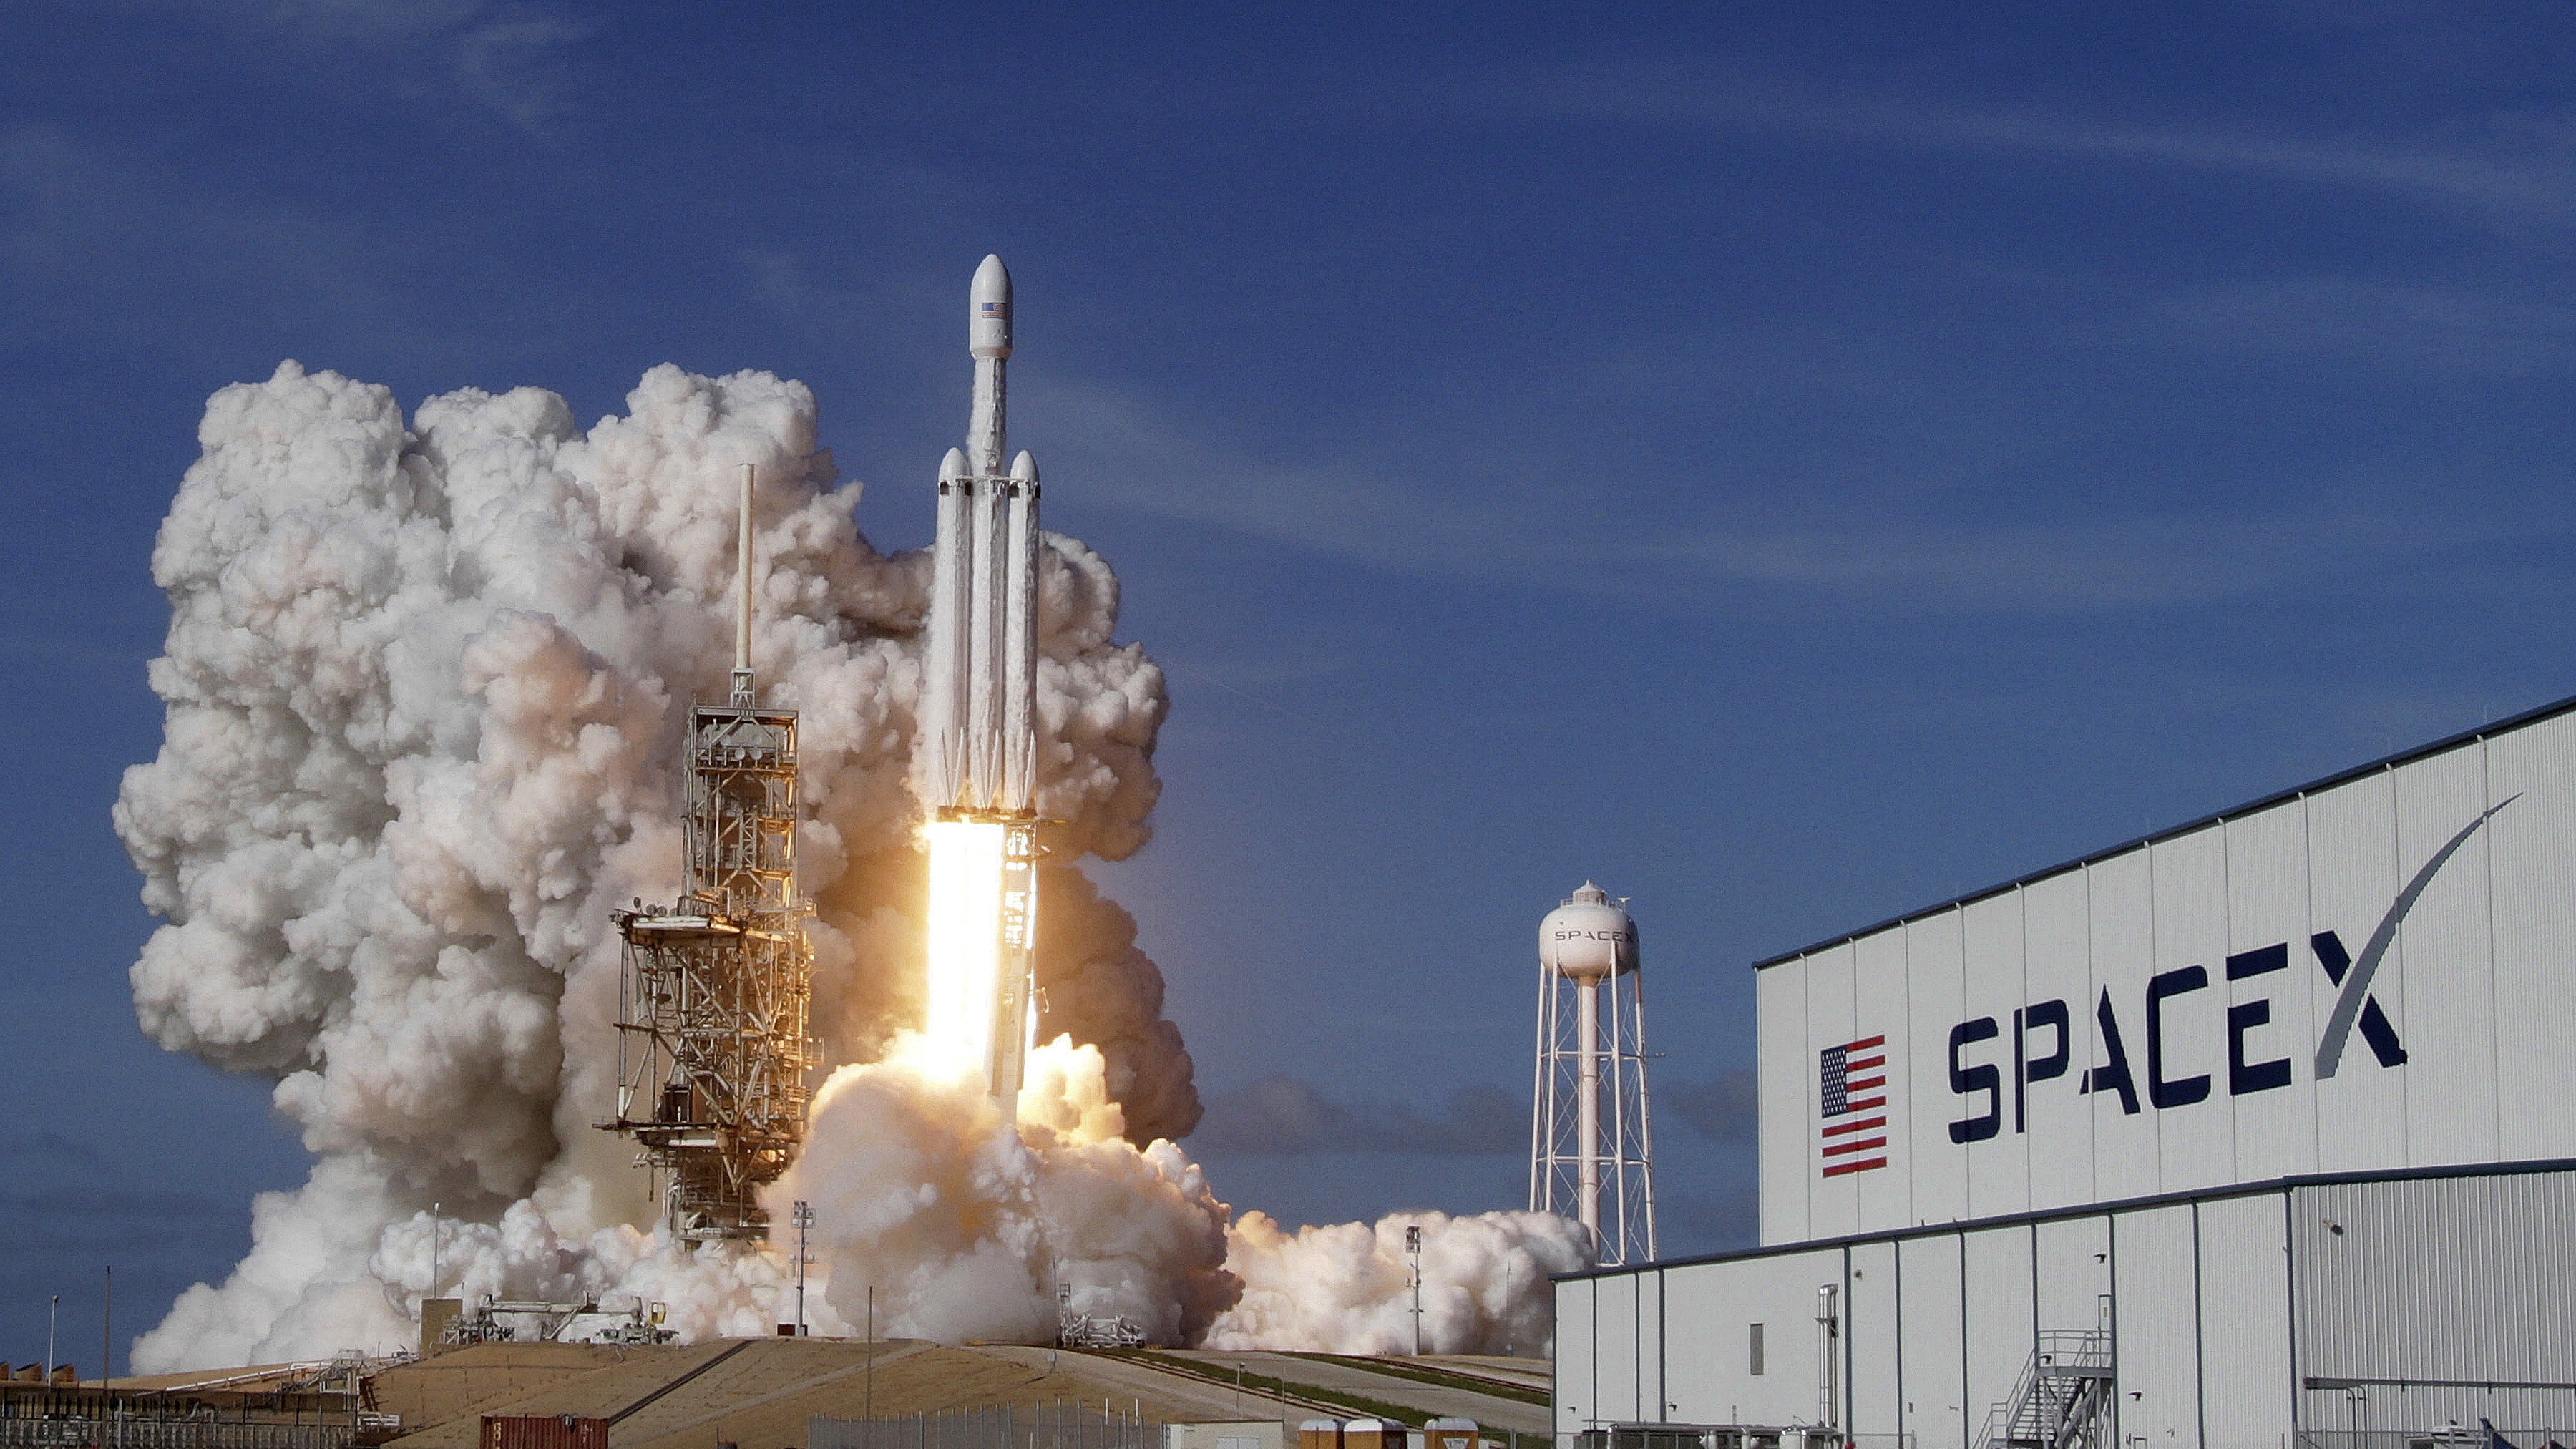 Danach hat ilon Musk und SpaceX verklagt die NASA